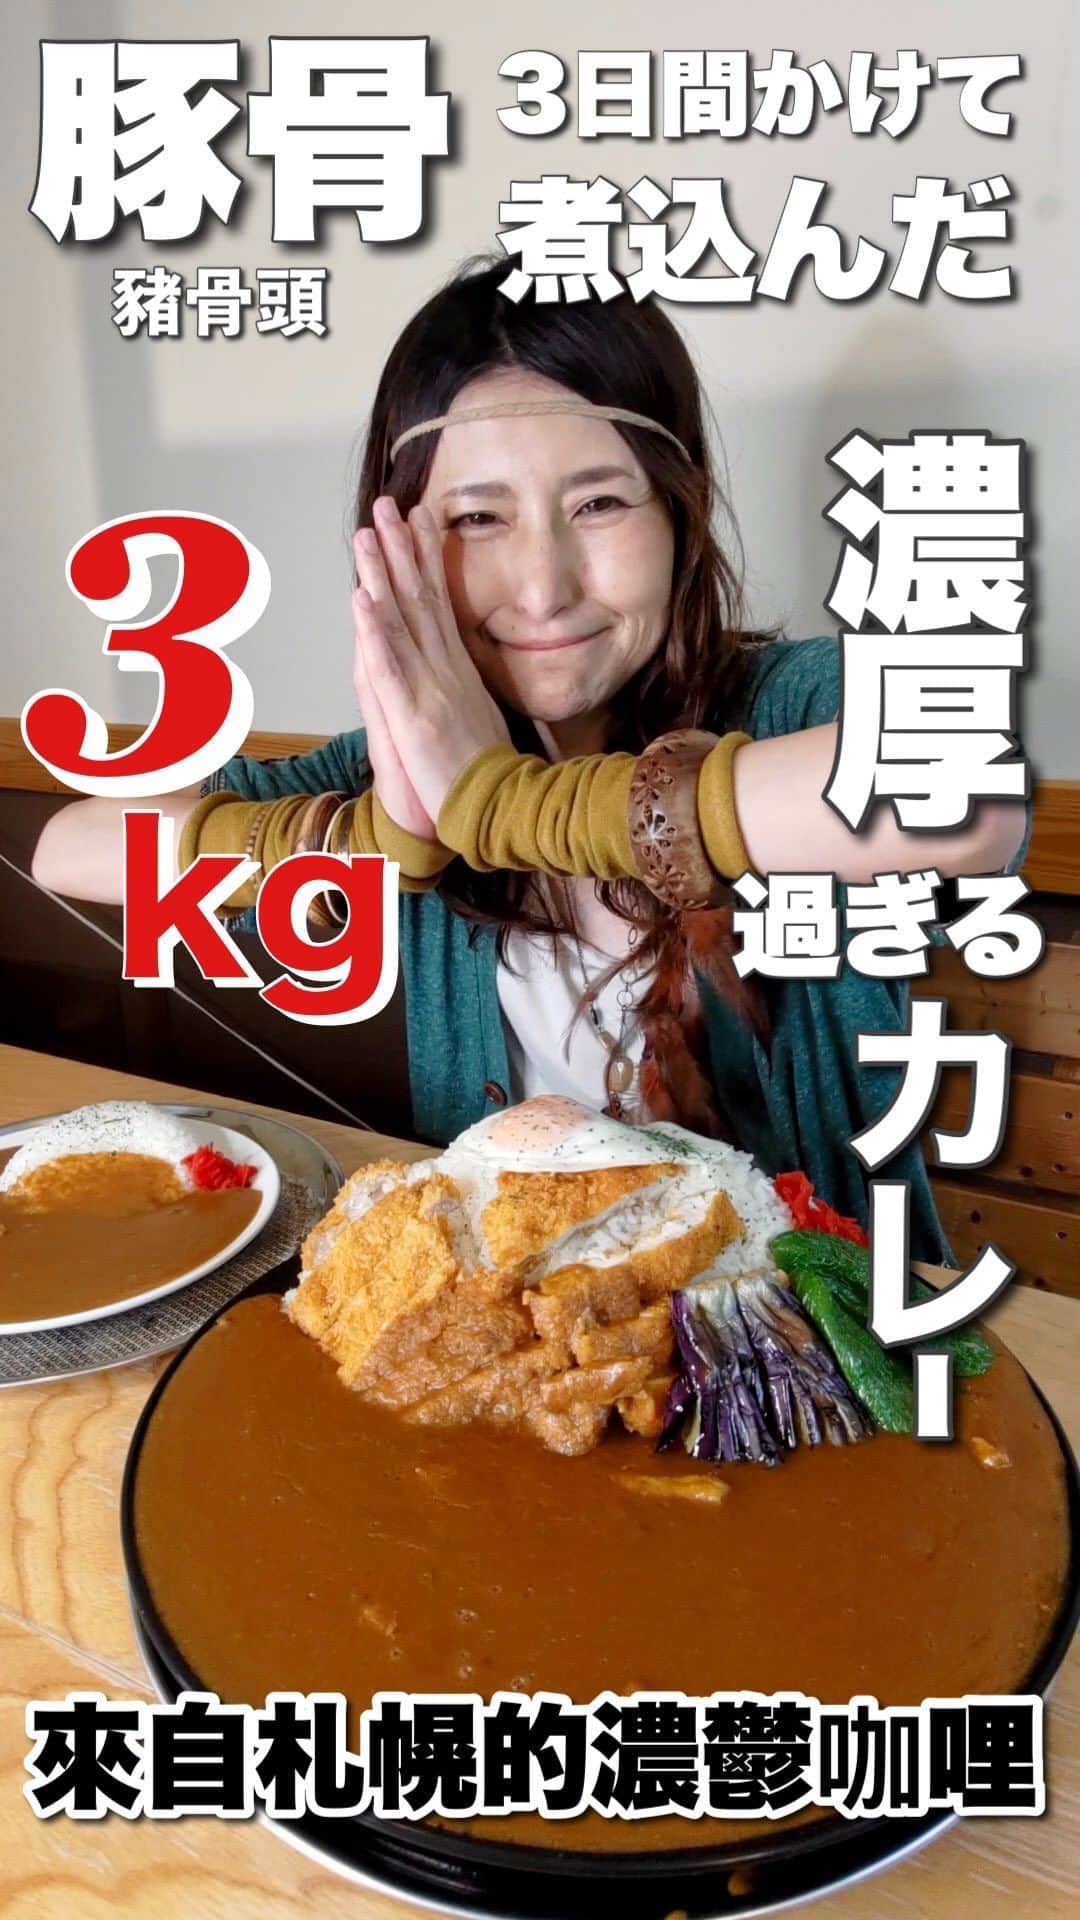 アンジェラ佐藤のインスタグラム：「頭骨スープのカレー3kg爆食 (北海道 美味的食物 豬骨咖哩 3kg）  (」ﾟДﾟ)」今回のおみせーーーーーーーーーーっ🏠 札幌市北区にある｢カレーの準泰(じゅんや)｣ @junya_tonden  （Hokkaido sapporo 咖哩店‘’準泰”）  (」ﾟДﾟ)」今回の爆食メニューーーーーーーっ！🍚 お店の名物 準泰カレー！今回特別に3kgのデカ盛り！ （餐廳著名的咖哩 3公斤 ❗️）  3日間豚骨スープでじっくり煮込んだカレー。 お肉も野菜も溶け込んでいるカレーは絶品！ (3天多製作的咖哩 肉和蔬菜混合在一起😋)  (꒪Д꒪) ﾉ ちなみにノーマルの準泰カレーは、なんと今どきワンコインの500円とリーズナブルなお値段😳 そしてカレーだけではなく、スープカレーやフォーなど色んな種類のメニューが豊富なのです！ (菜單項目種類繁多！🍜🍛)  (」ﾟДﾟ)」みんな是非食べに行ってねーーーーーーーっ！🏃‍♂️ (※今回Google翻訳で台湾語に翻訳してみました！正確に翻訳されてなかったらすみません😅)  ※ここ重要！テストに出ます！＼_( ﾟﾛﾟ) ［Instagram年内フォロワー数20万を目指して頑張ってます‼️過去投稿➔@angela_satou いいね、フォロー、保存！なにとぞよろしくお願いいたしまーーーーーす！🙇🏻‍♀️(←利根川土下座)］  #カレーの準泰 #北区グルメ #札幌グルメ #北海道グルメ #札幌のカレー店 #北海道 #Hokkaido #北海道咖哩店 #デカ盛り #大盛り #メガ盛り  #漫画盛り #マンガ盛り  #モッパン #먹방 #大胃王 #大食い王 #大食い女王 #competitiveeater #一个猪 #대식까 #安吉拉佐藤 #安琪拉佐藤 #angela佐藤 #夢は北海道と台灣を繋げる橋になる事 #いっぱい食べれる事に感謝 #幸せなごはん #北海道好吃 #ヒンナヒンナ  【カレーの準泰 屯田店】 011-776-5500 北海道札幌市北区屯田7条10丁目5-20  http://150.60.81.233/」